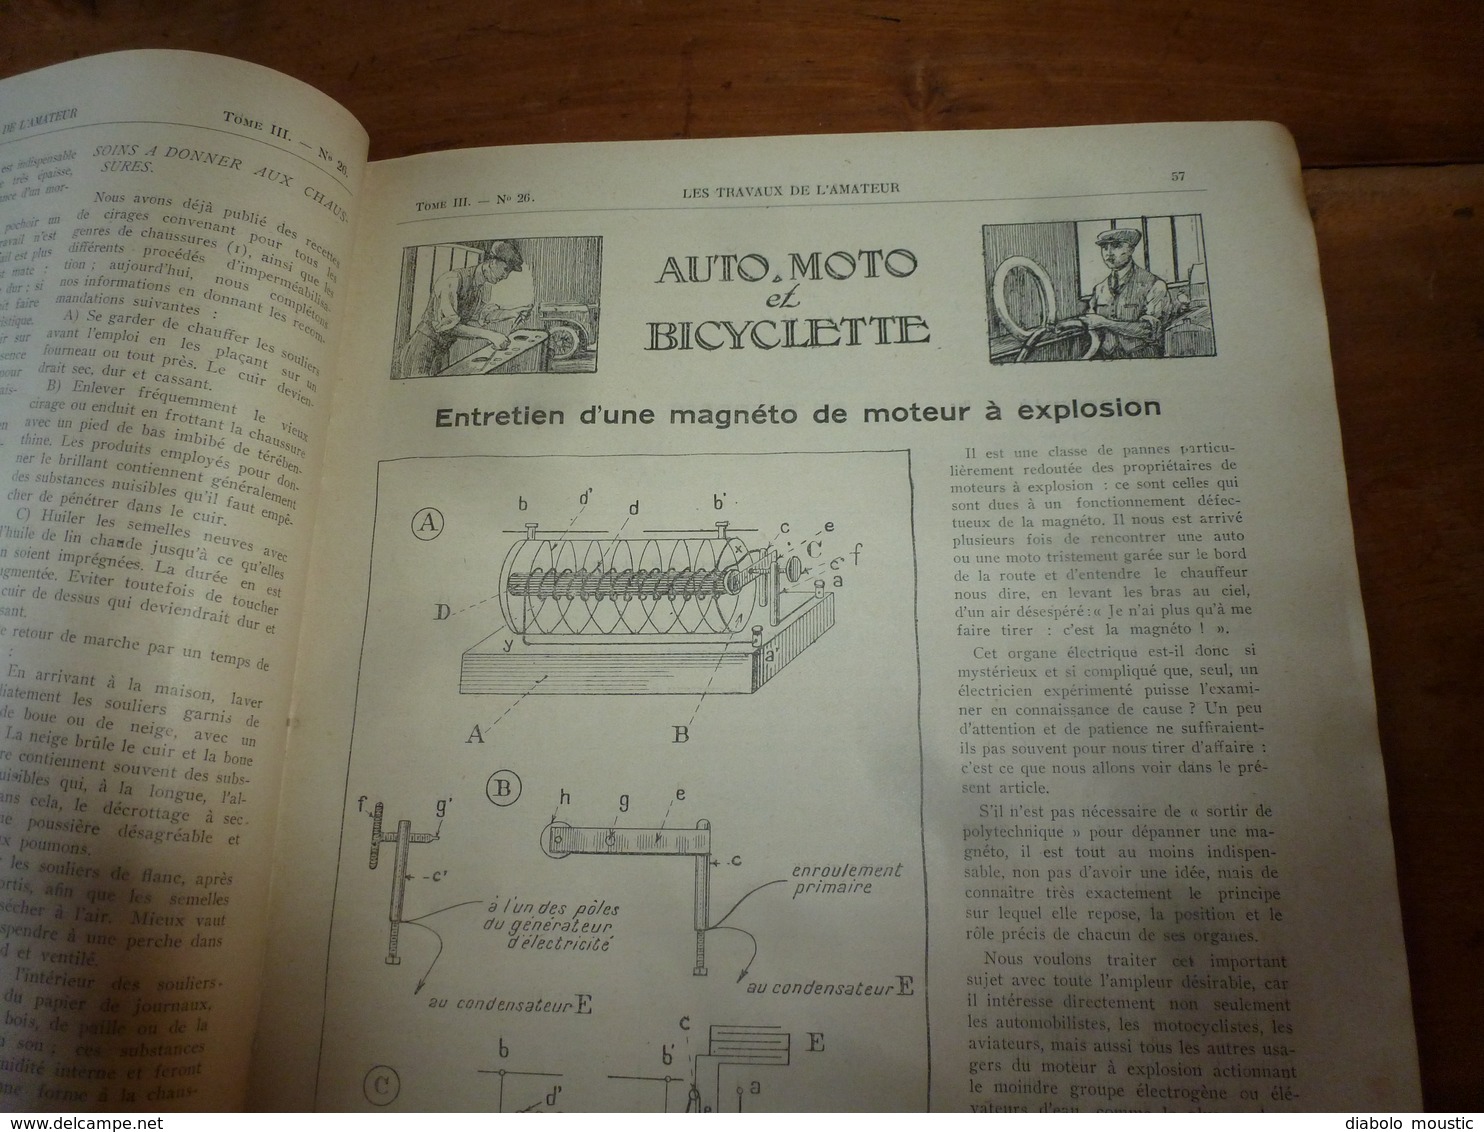 1925 LES TRAVAUX DE L'AMATEUR:(Baromètre-glyc;Reliure;Réparer soulier;Déco-pochoir;Entretien moteur auto;Robineterie;etc